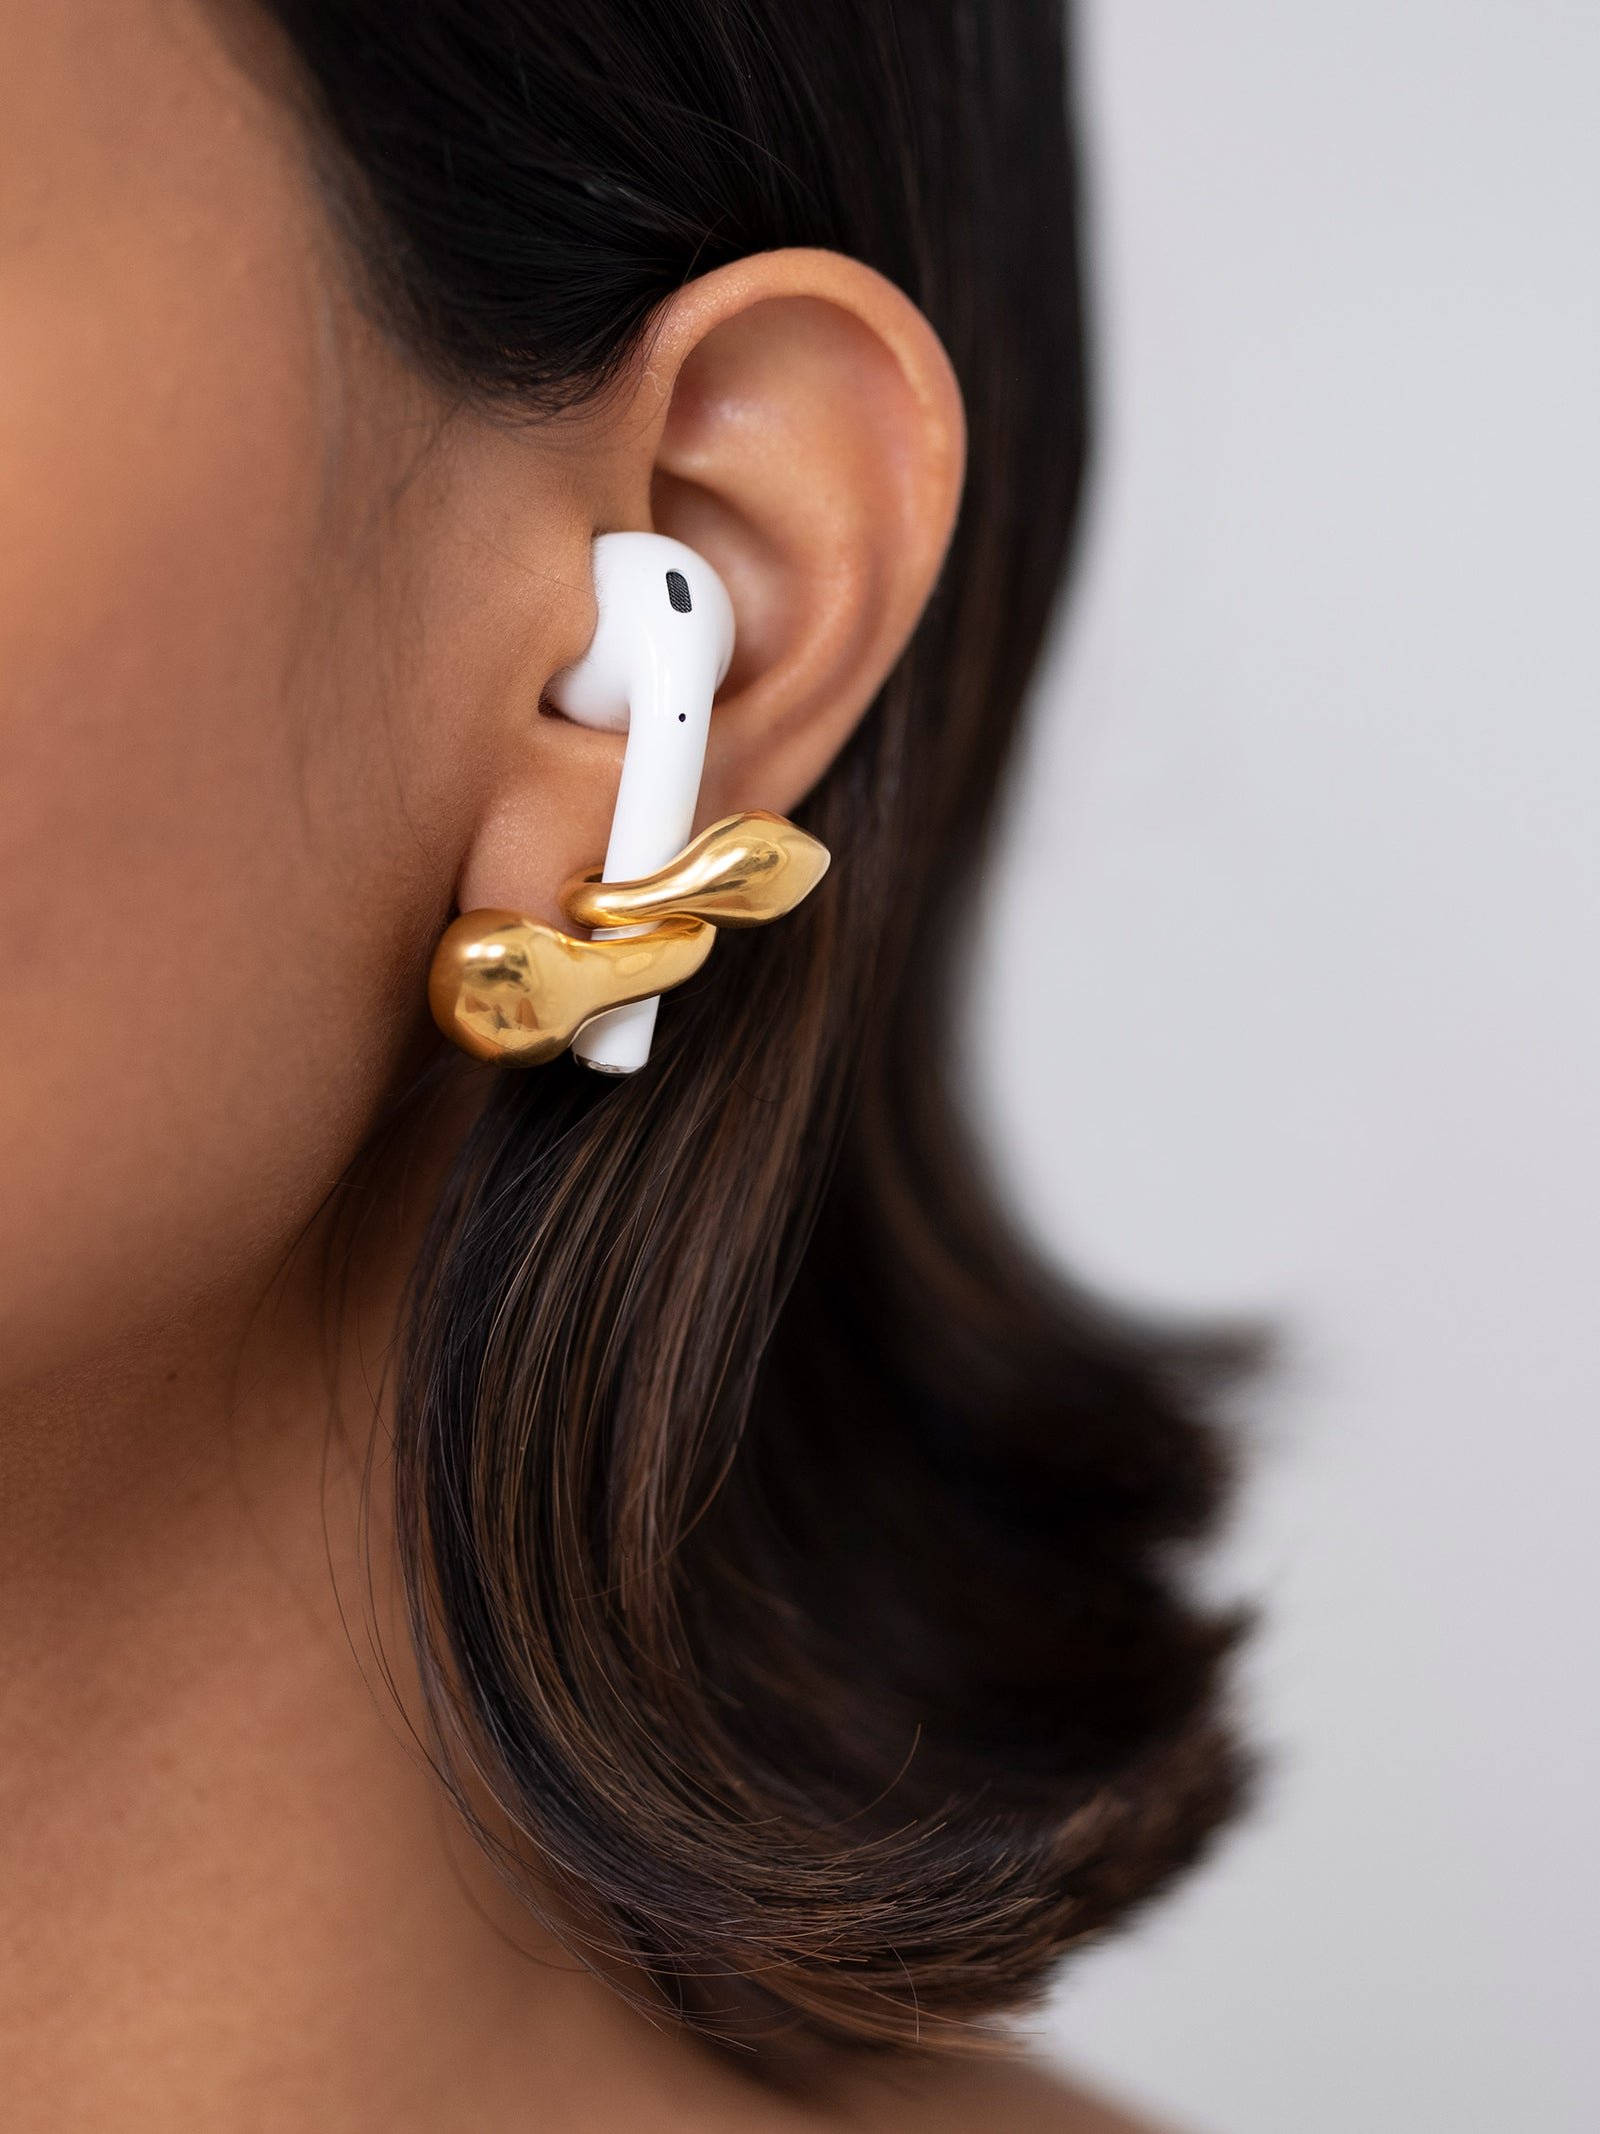 Misho_designs_PebblePod_Airpod_jewellery-earring-2_1600x.jpg